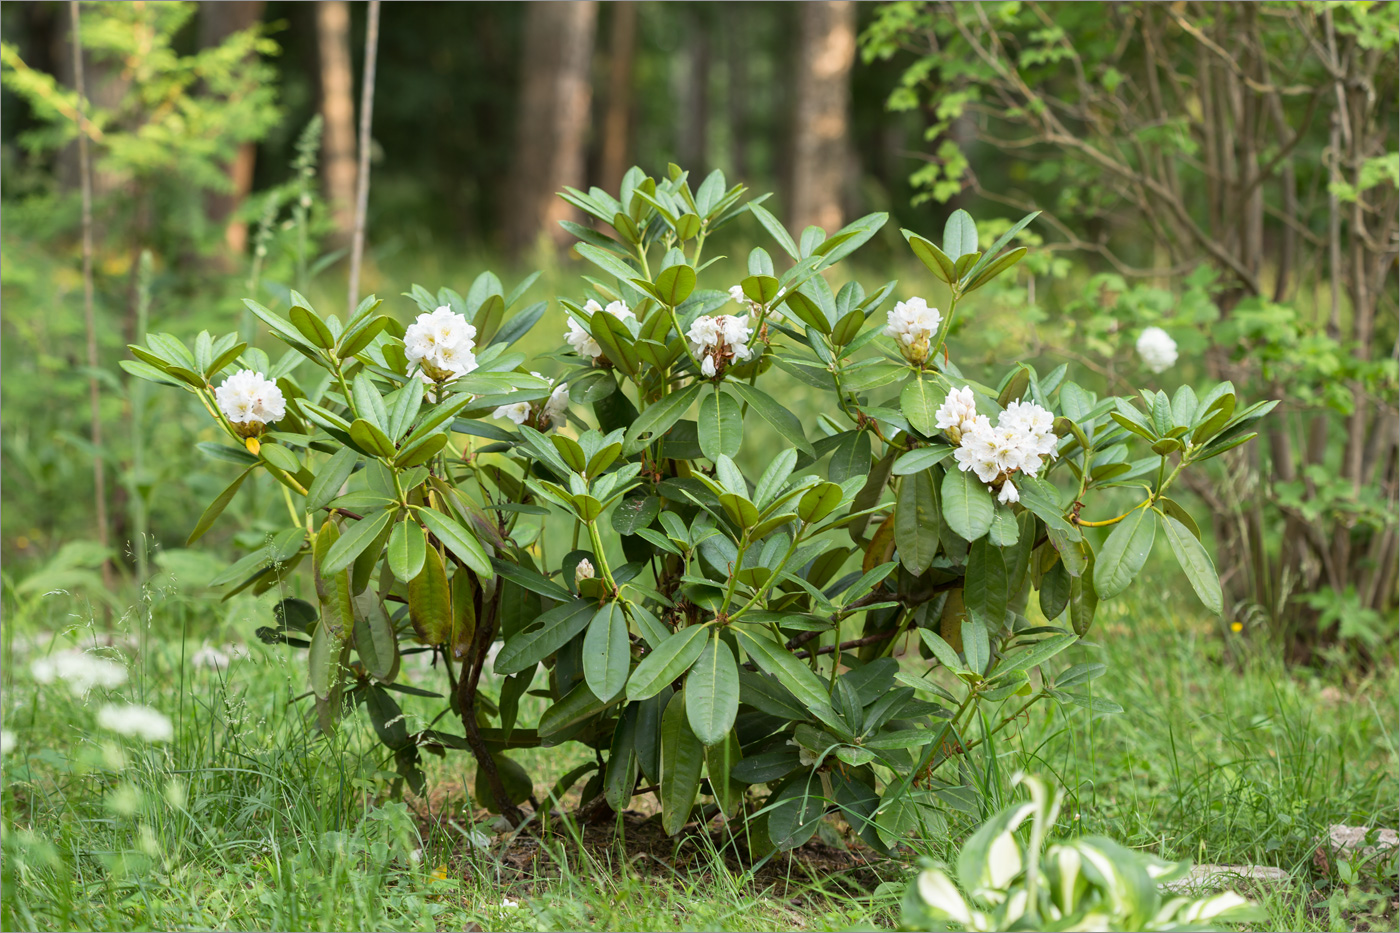 Image of genus Rhododendron specimen.